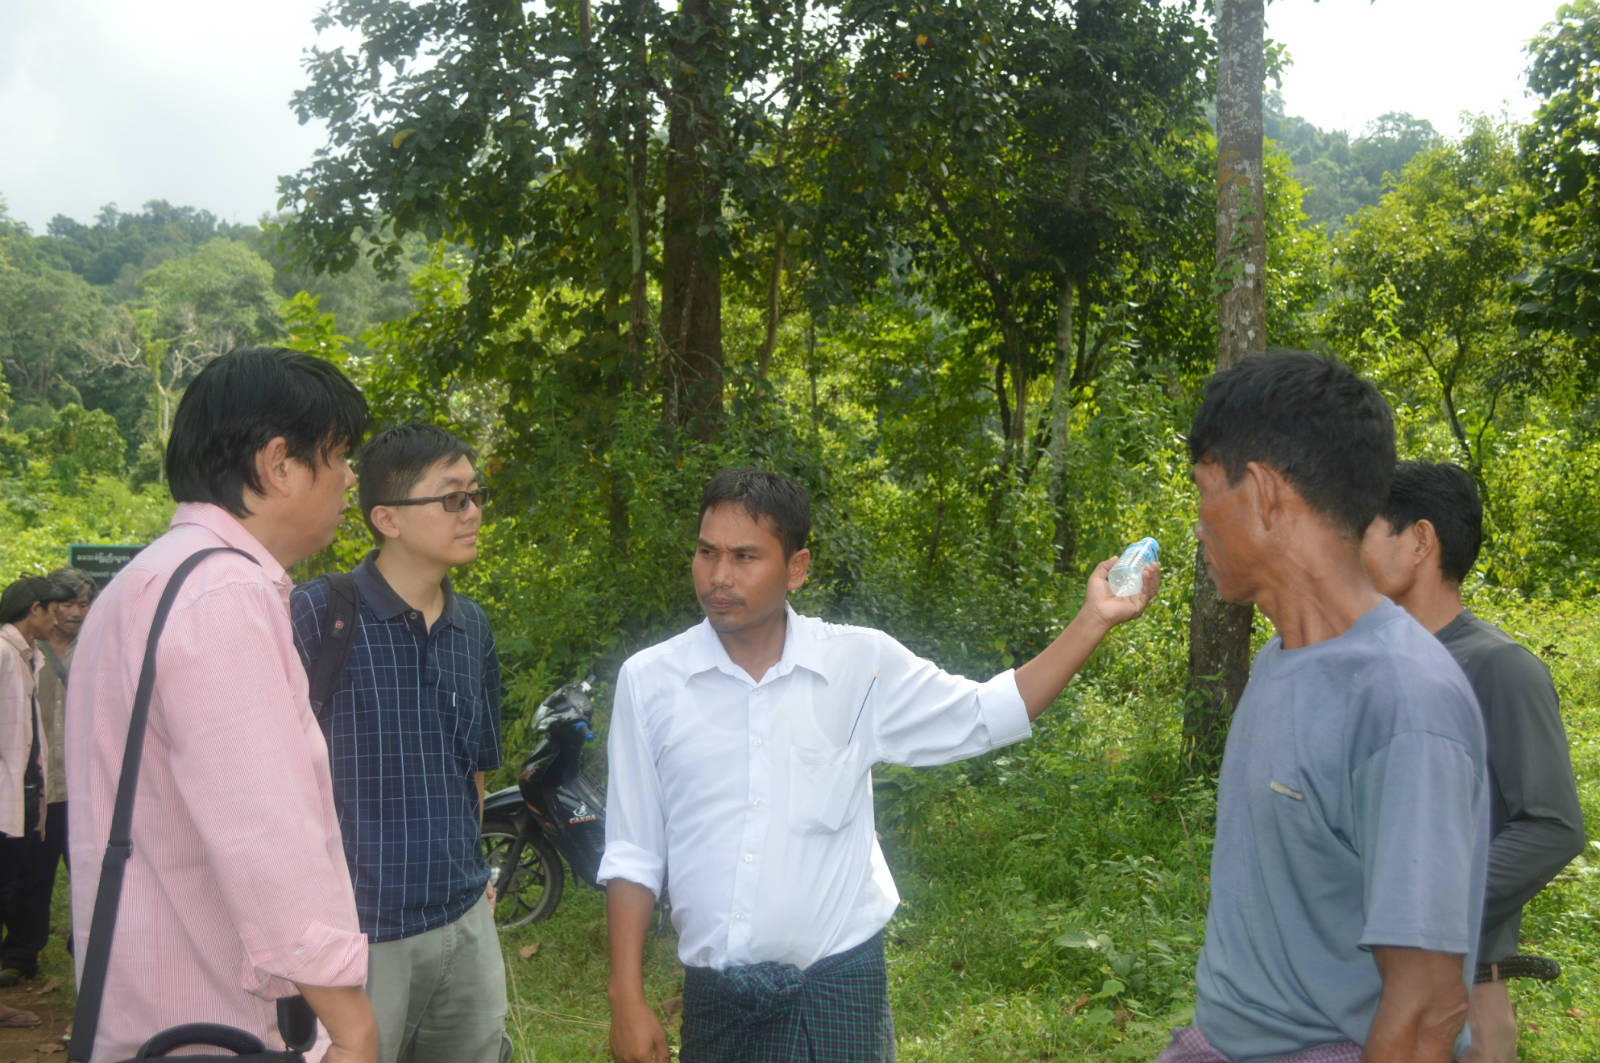 克欽邦的森林用戶小組成員介紹社區森林的管理情況。